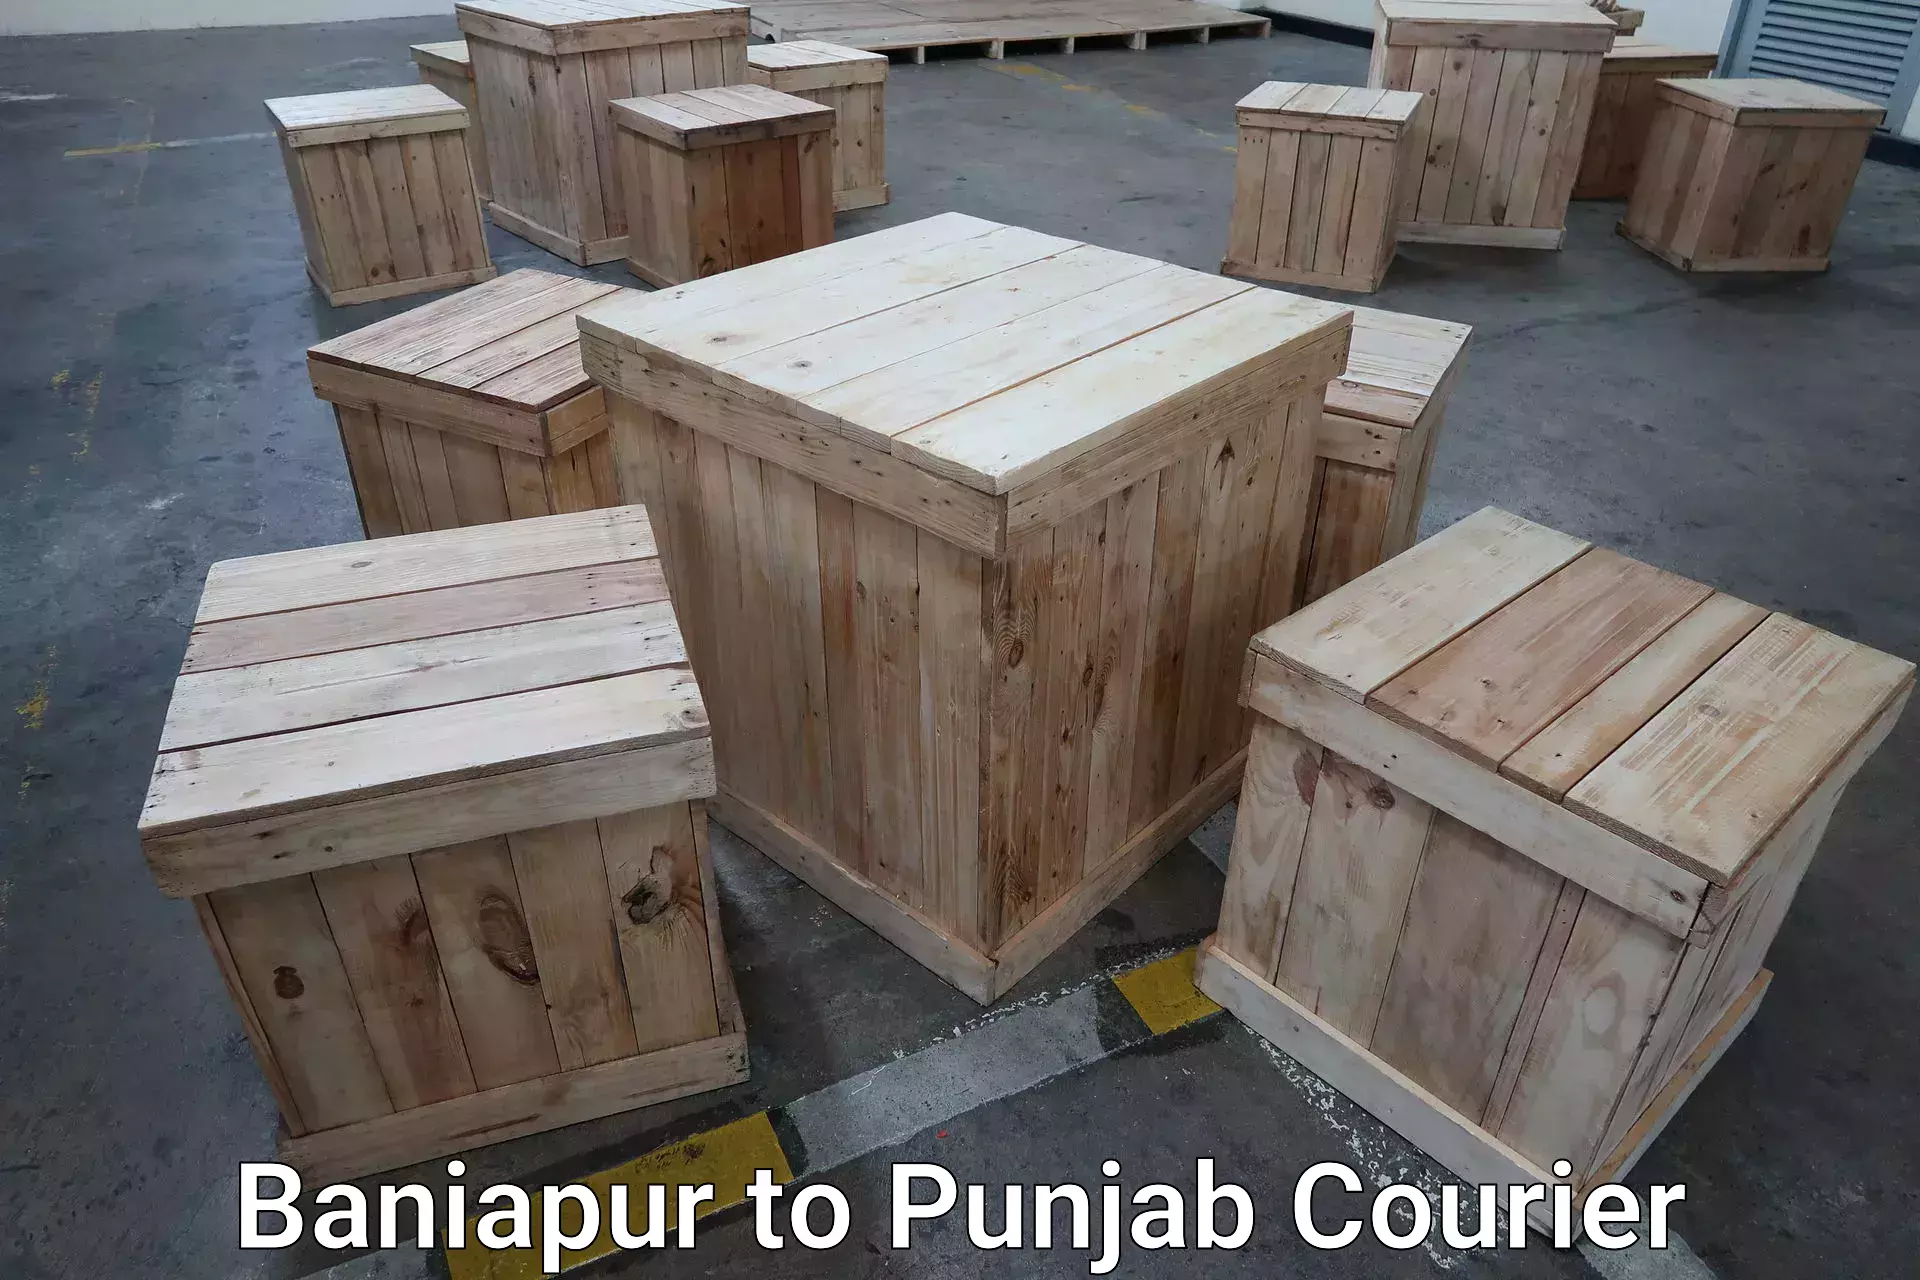 Luggage transport deals Baniapur to Central University of Punjab Bathinda